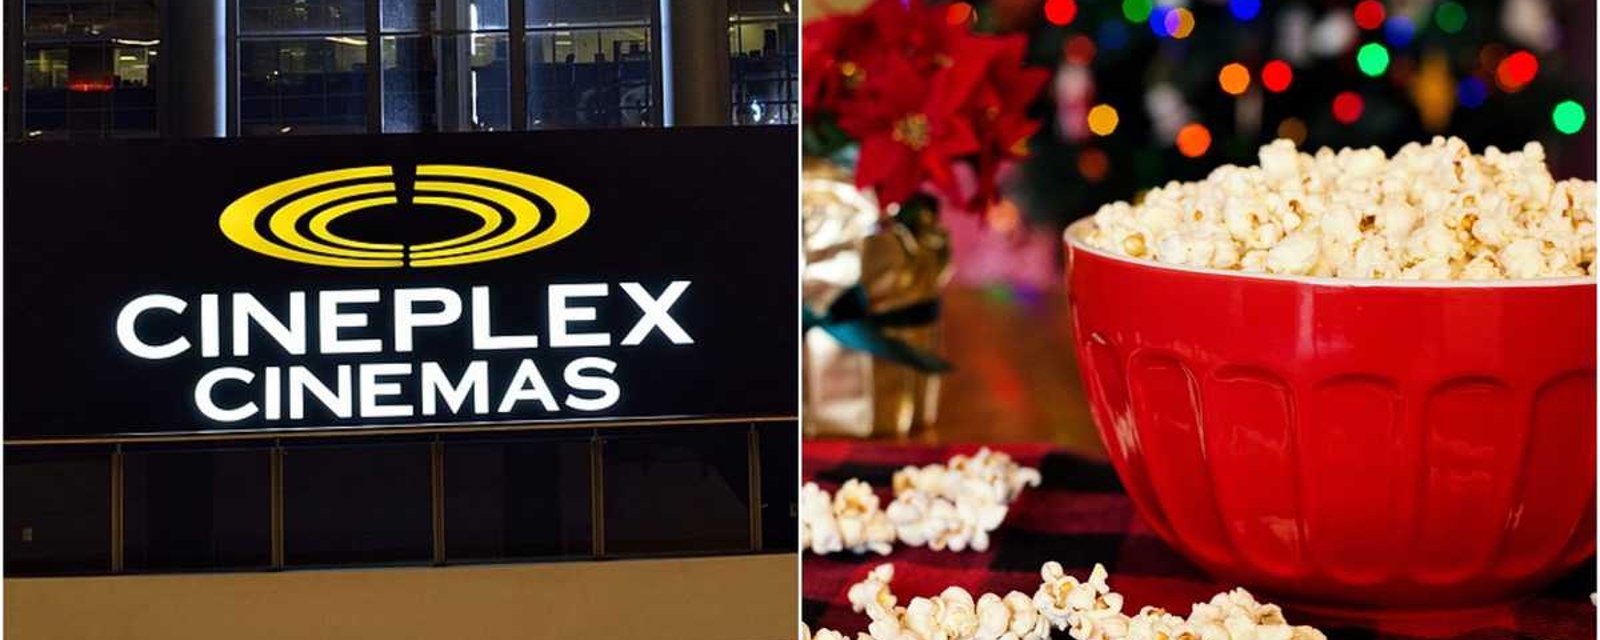 Le 7 décembre, vous pourrez visionner gratuitement des classiques de Noël dans les Cineplex du Canada! 